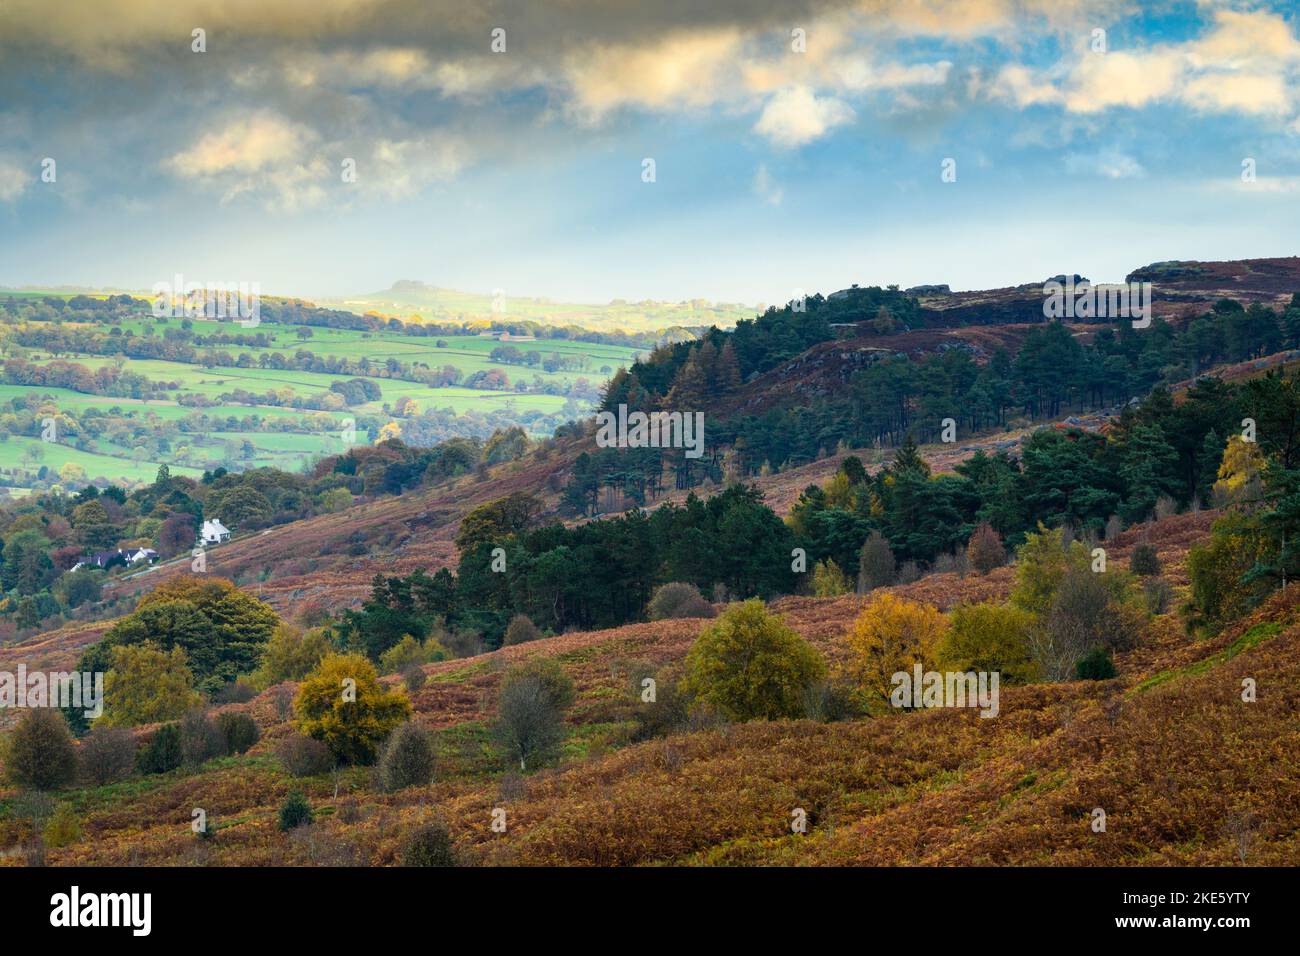 Vue sur Wharfedale & Cow & Calf Rocks (crocheen et bruyère bruns, croch Almscliffe au soleil dans la vallée, haute colline) - Ilkley, West Yorkshire, Angleterre. Banque D'Images